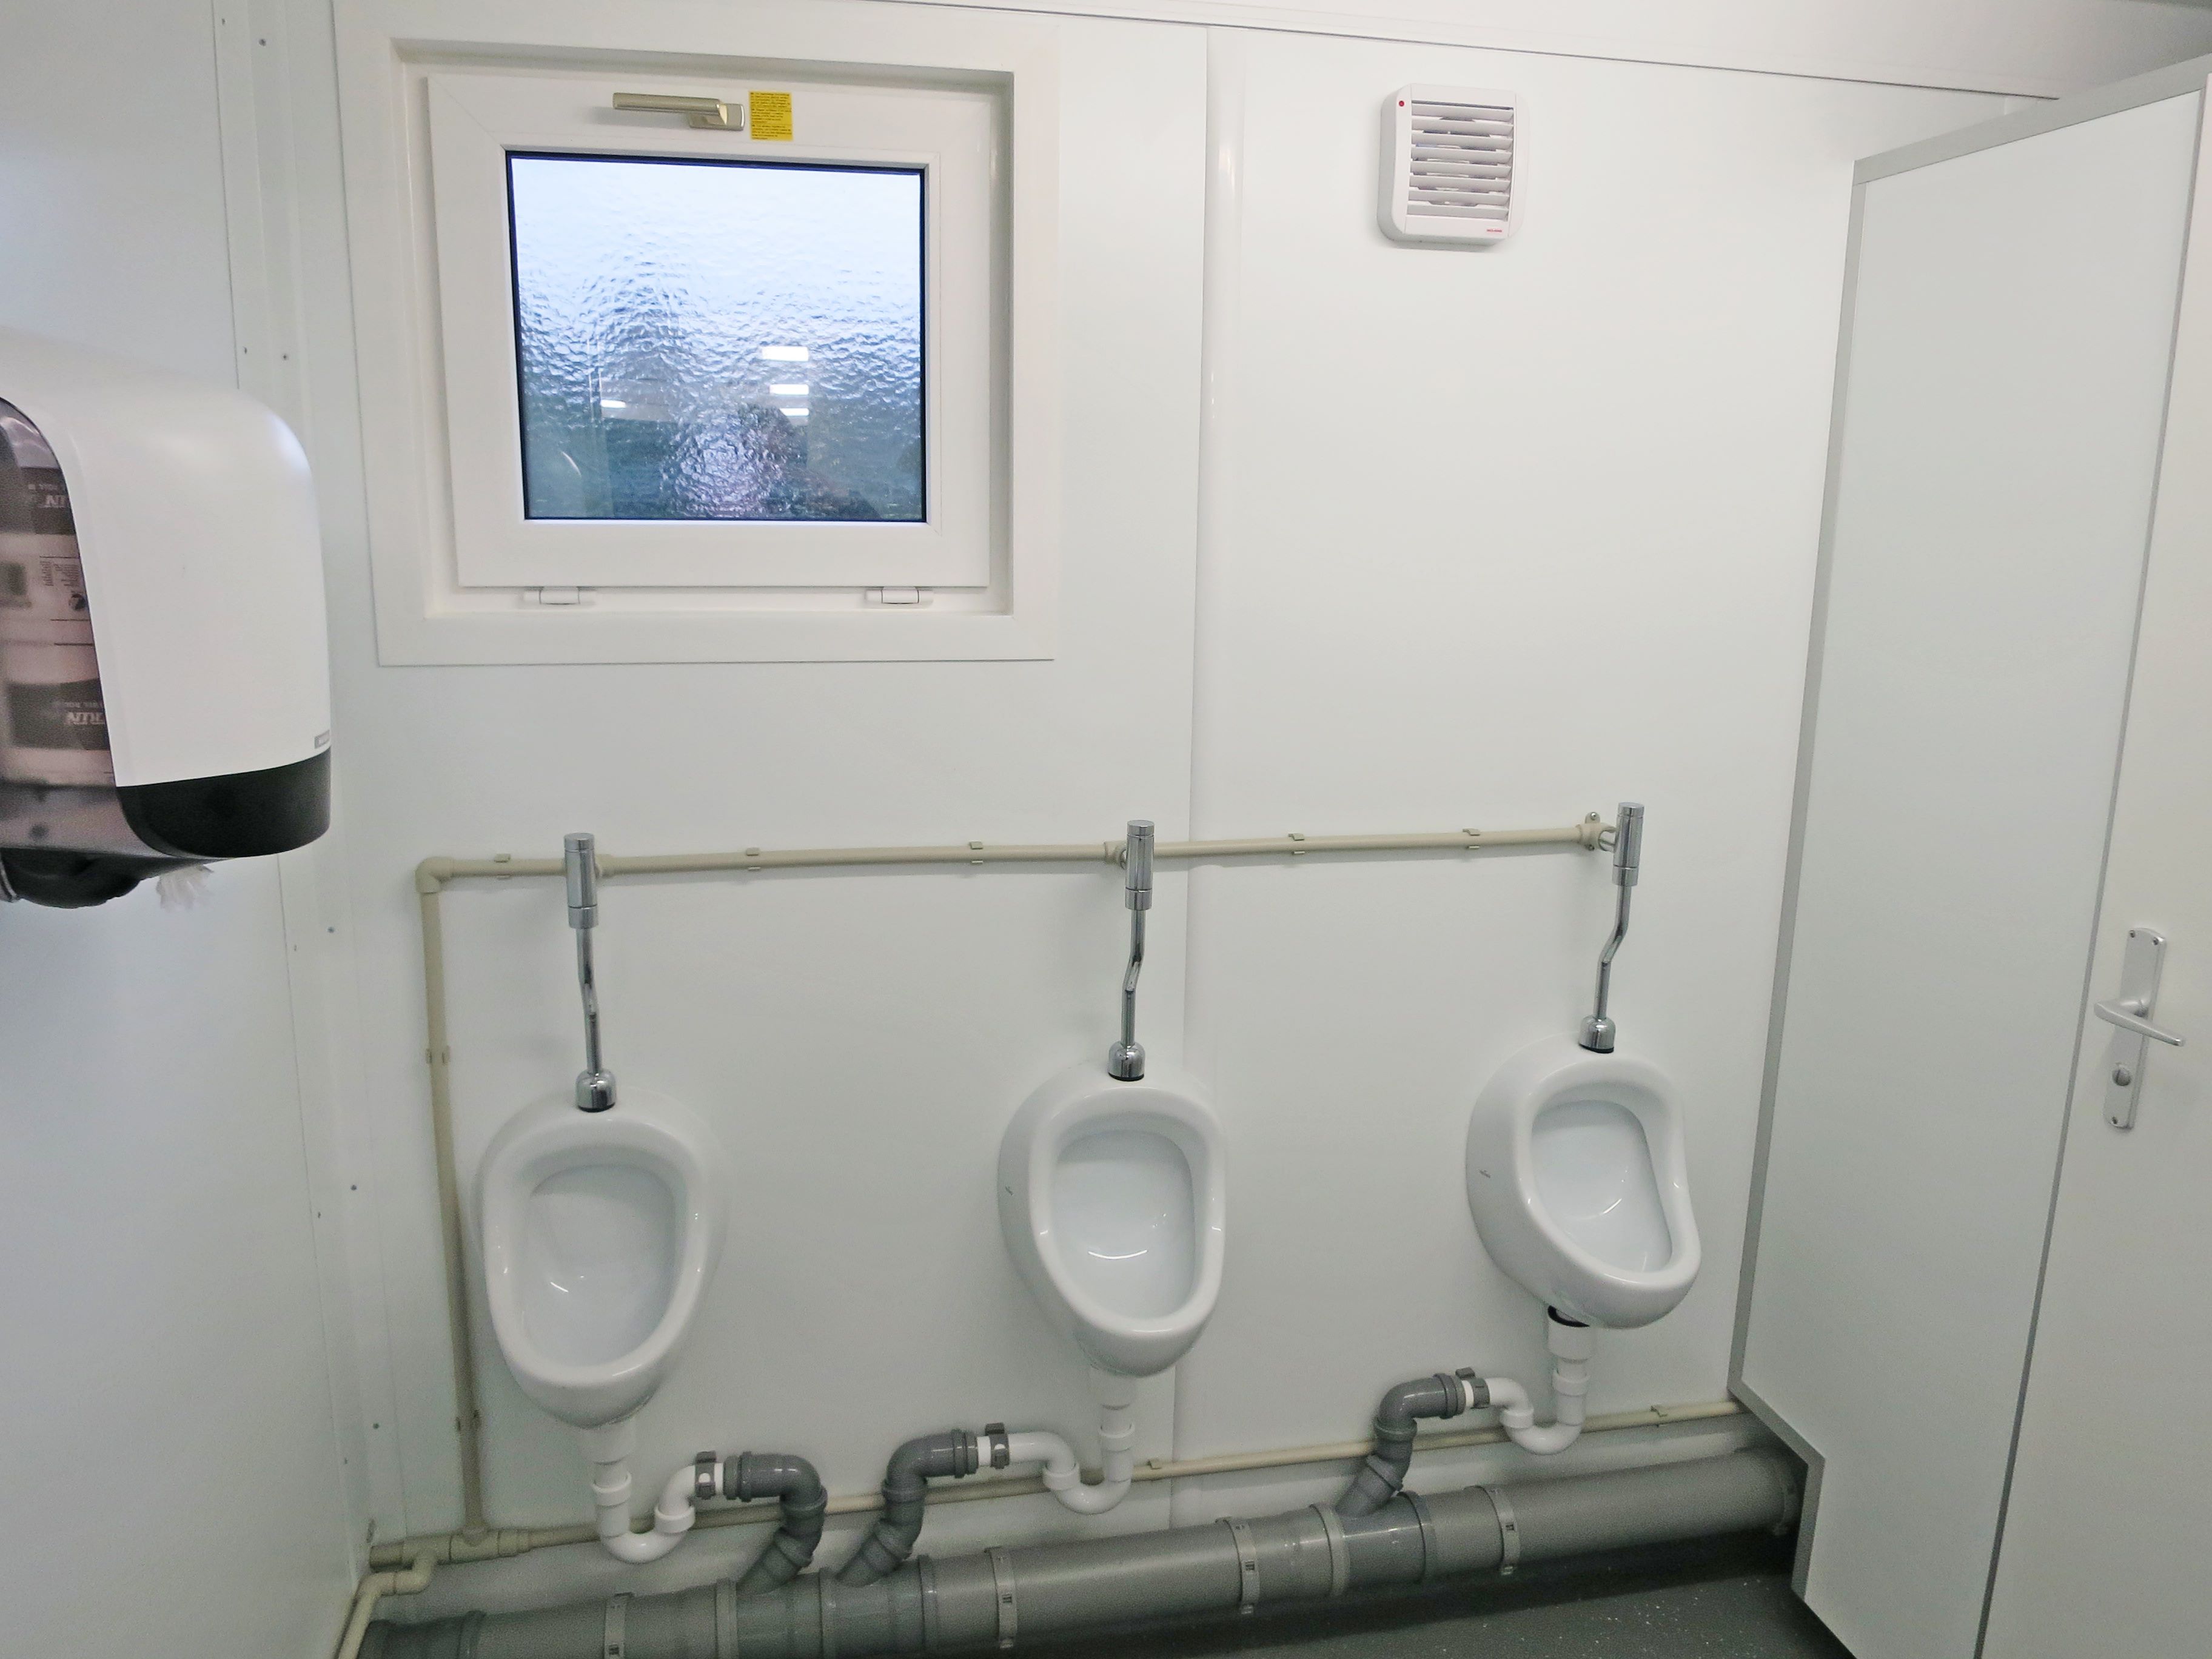 Sanitetsutrymme med urinoar och handfat